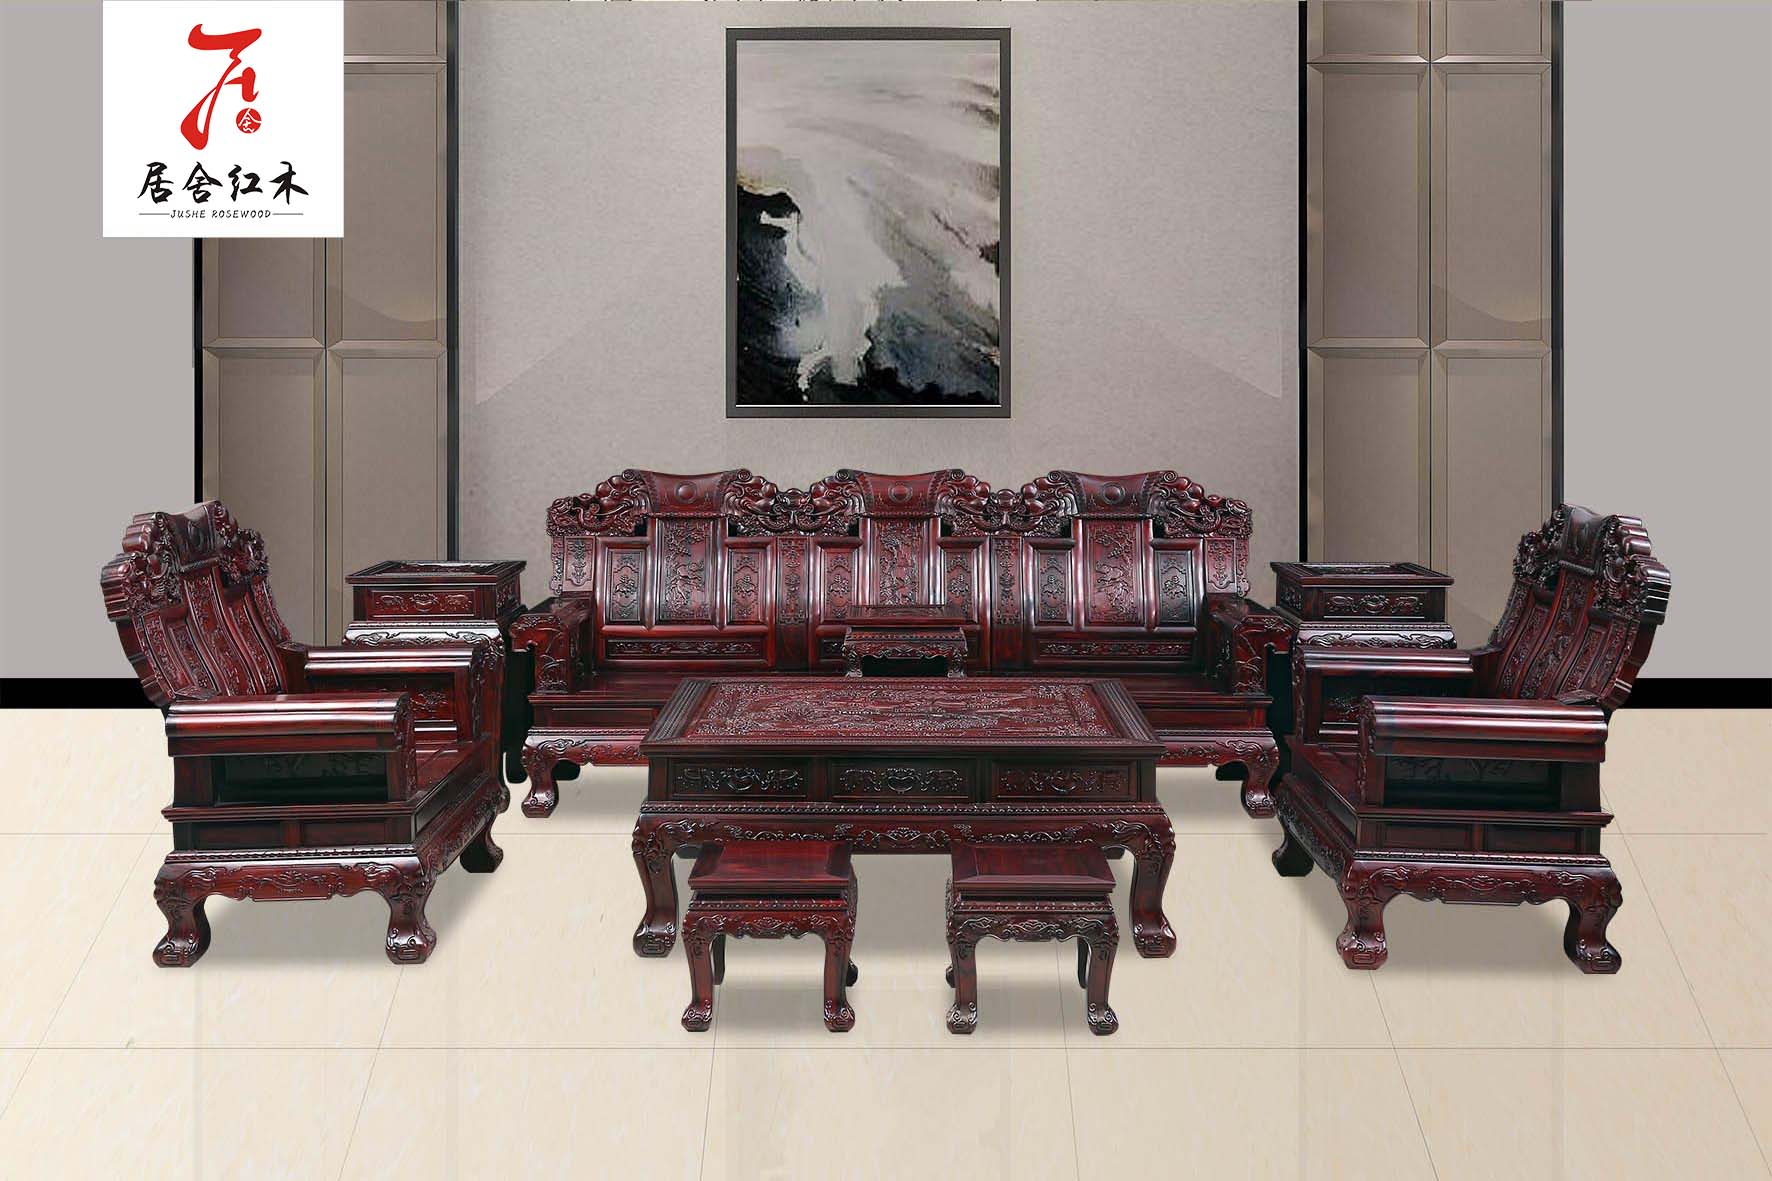 黑酸枝大象头沙发13件套-东阳红木家具厂批发-红木组合沙发-红木家私图片